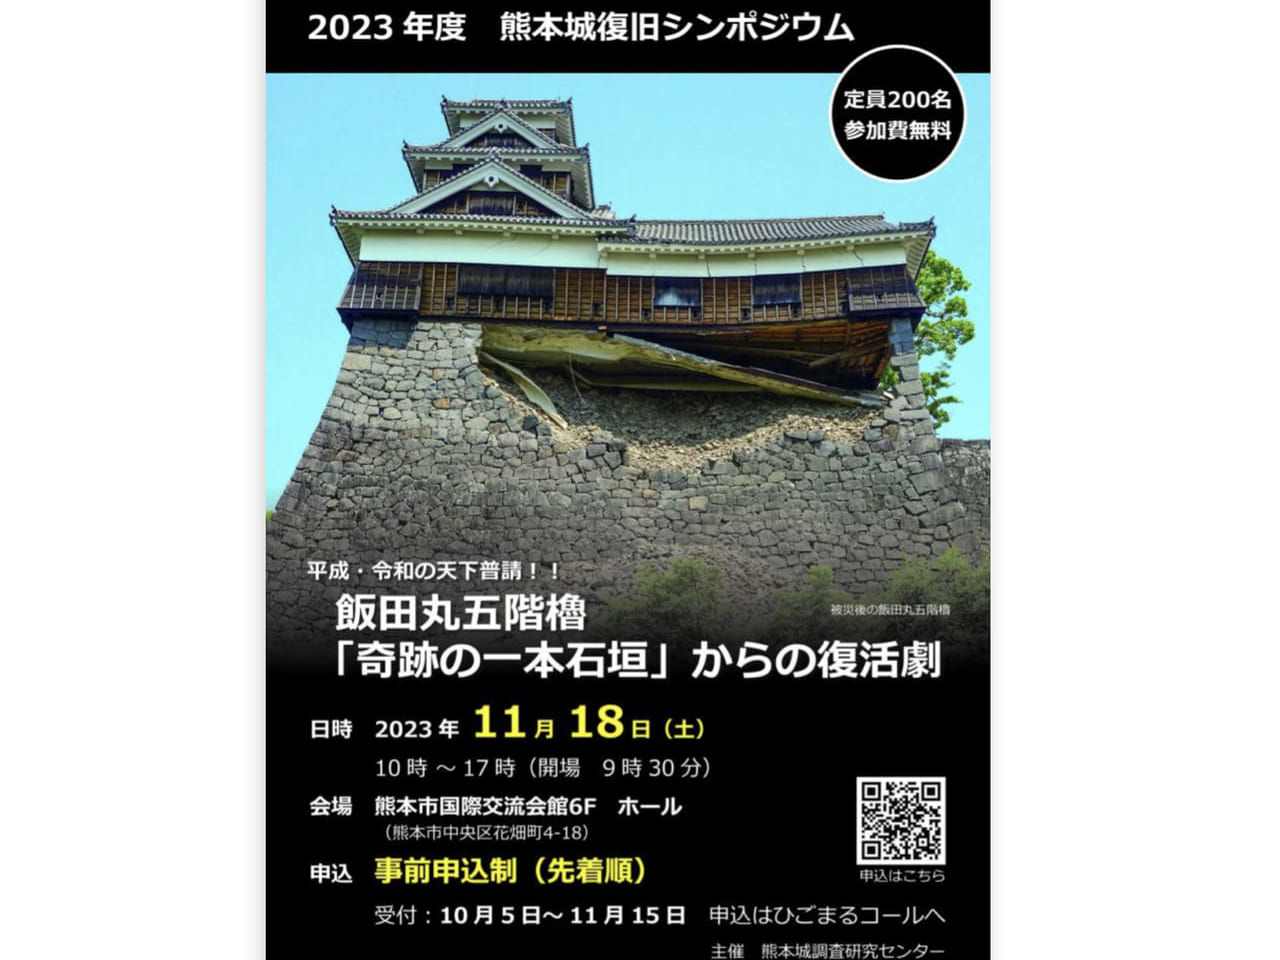 飯田丸五階櫓「奇跡の一本石垣」からの復活劇